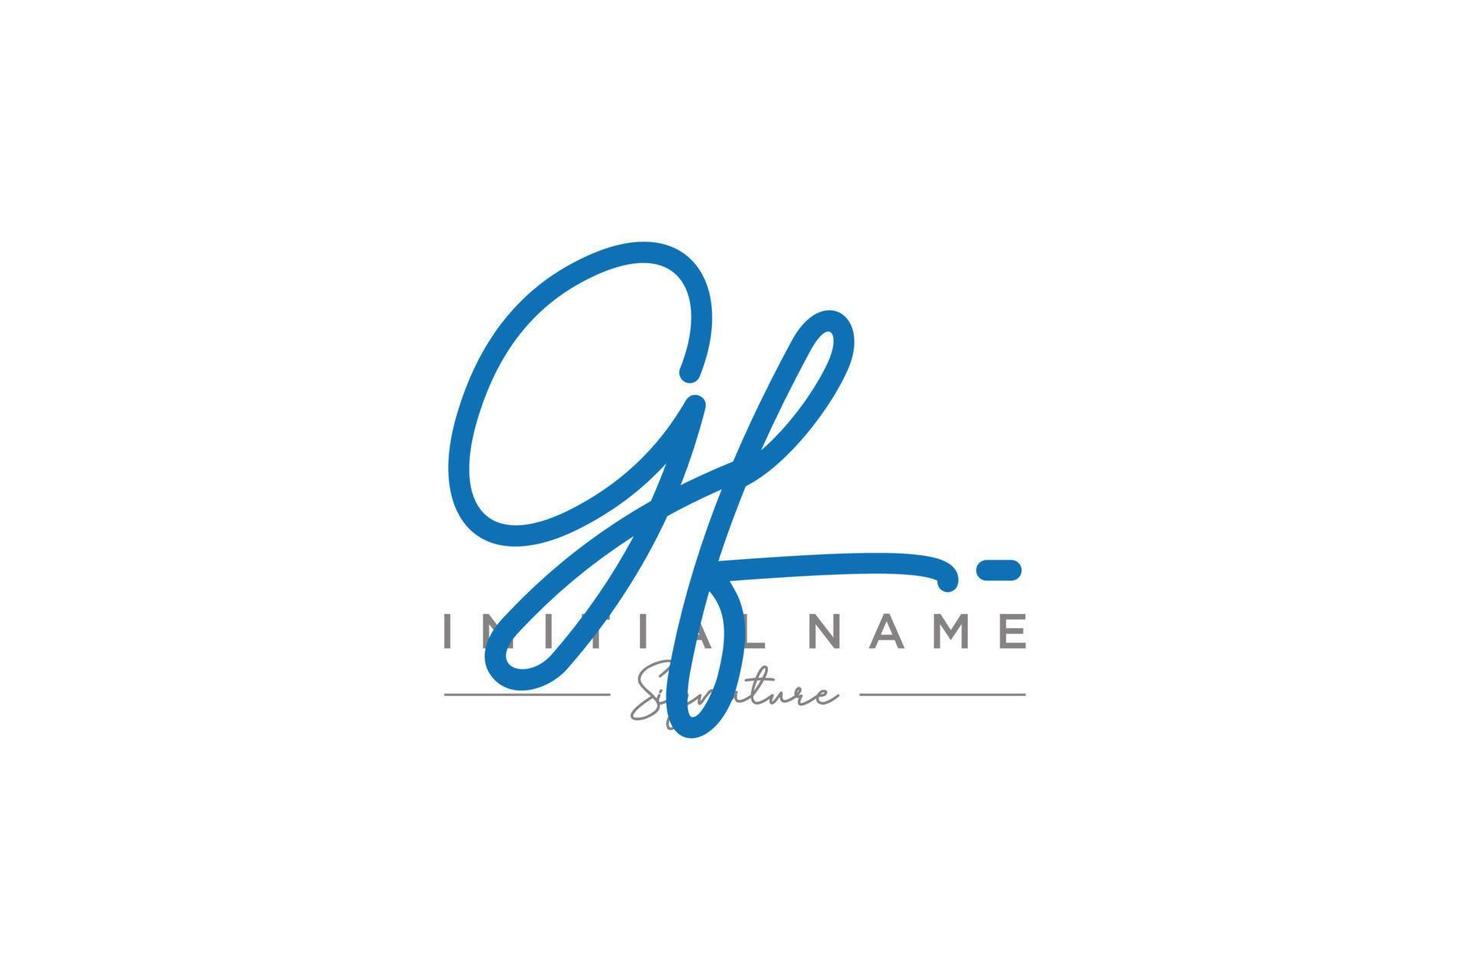 iniziale gf firma logo modello vettore. mano disegnato calligrafia lettering vettore illustrazione.